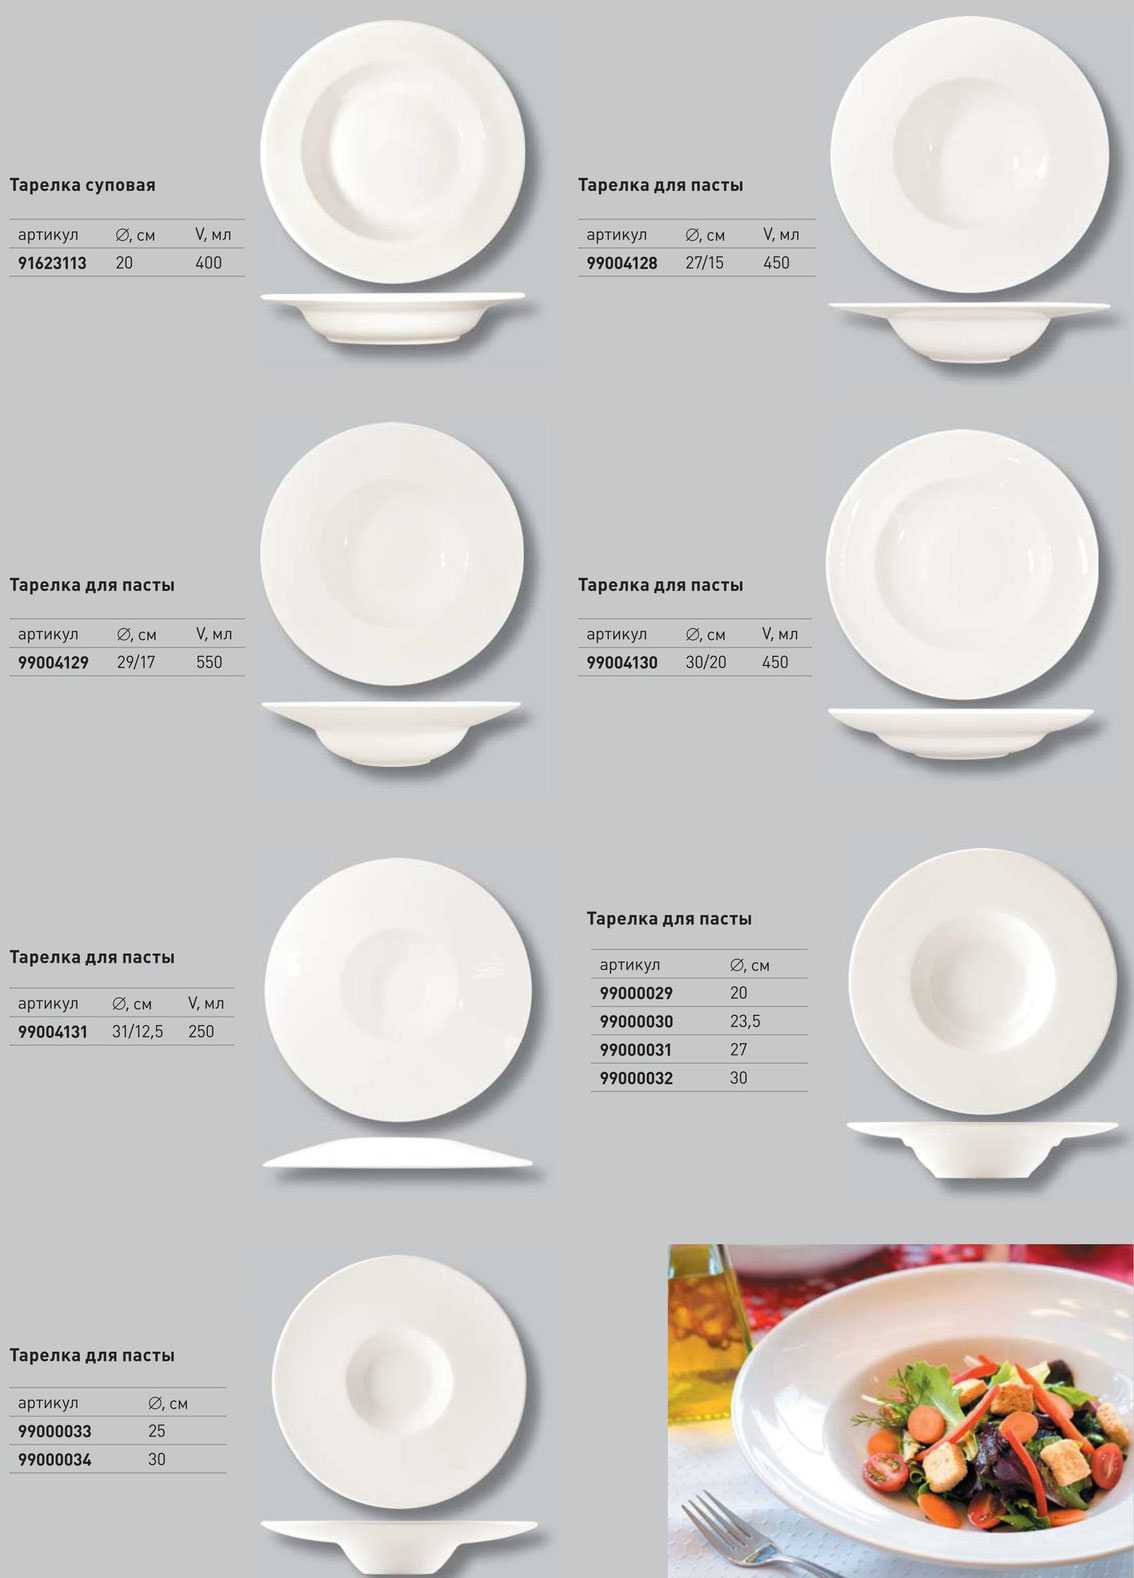 Вес порции блюд: стандартные объемы для различных видов